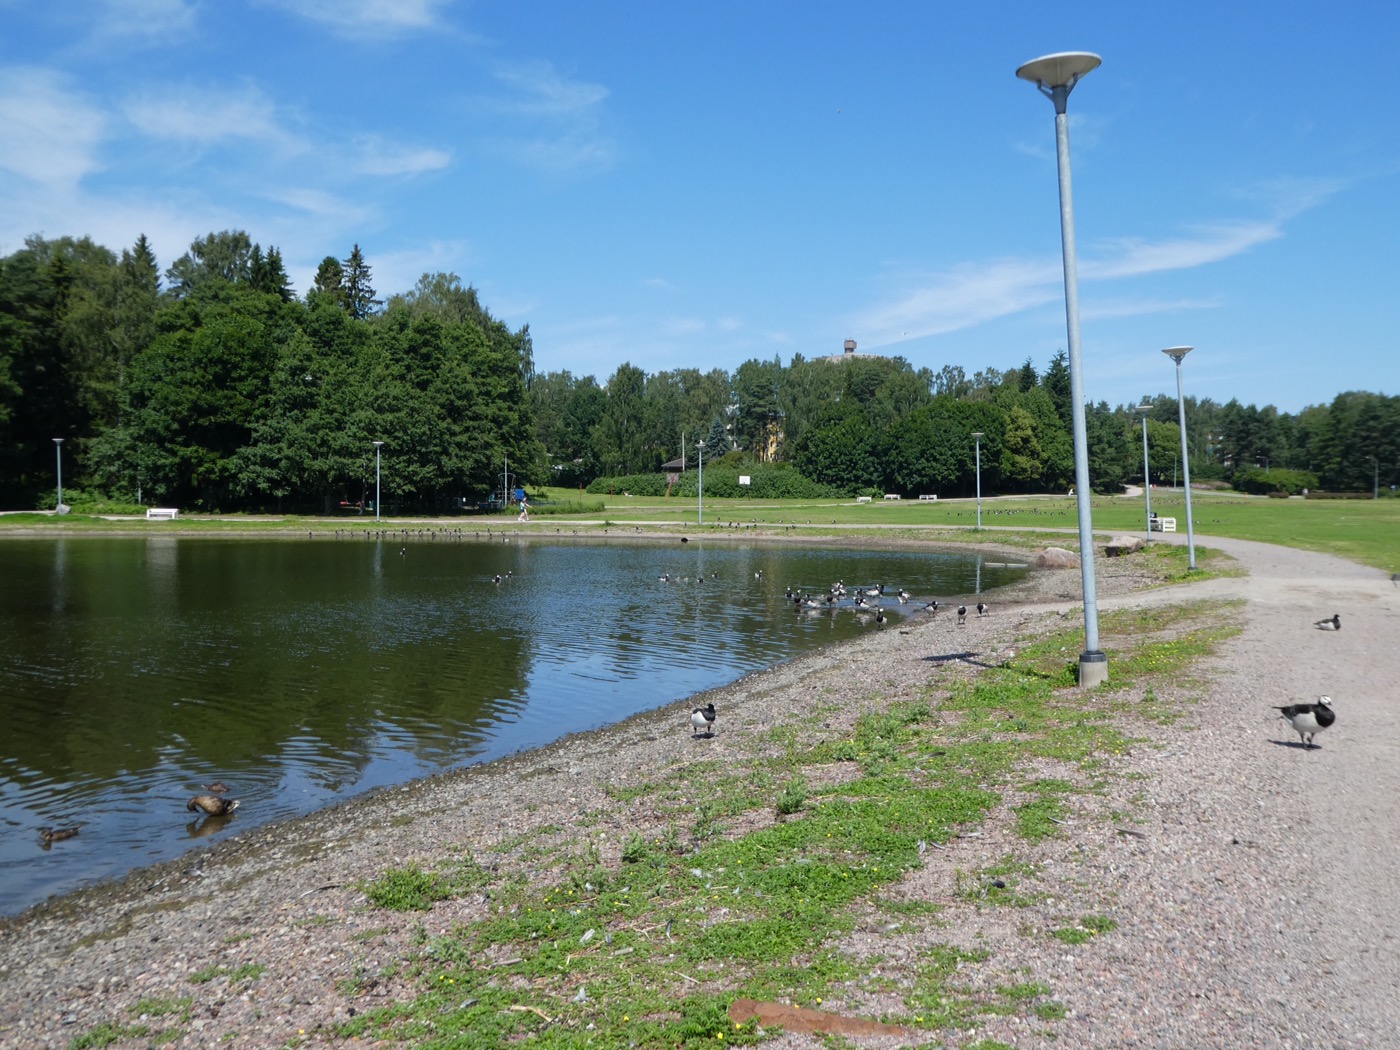 Otsolahti, Tapiola, Espoo, Finland